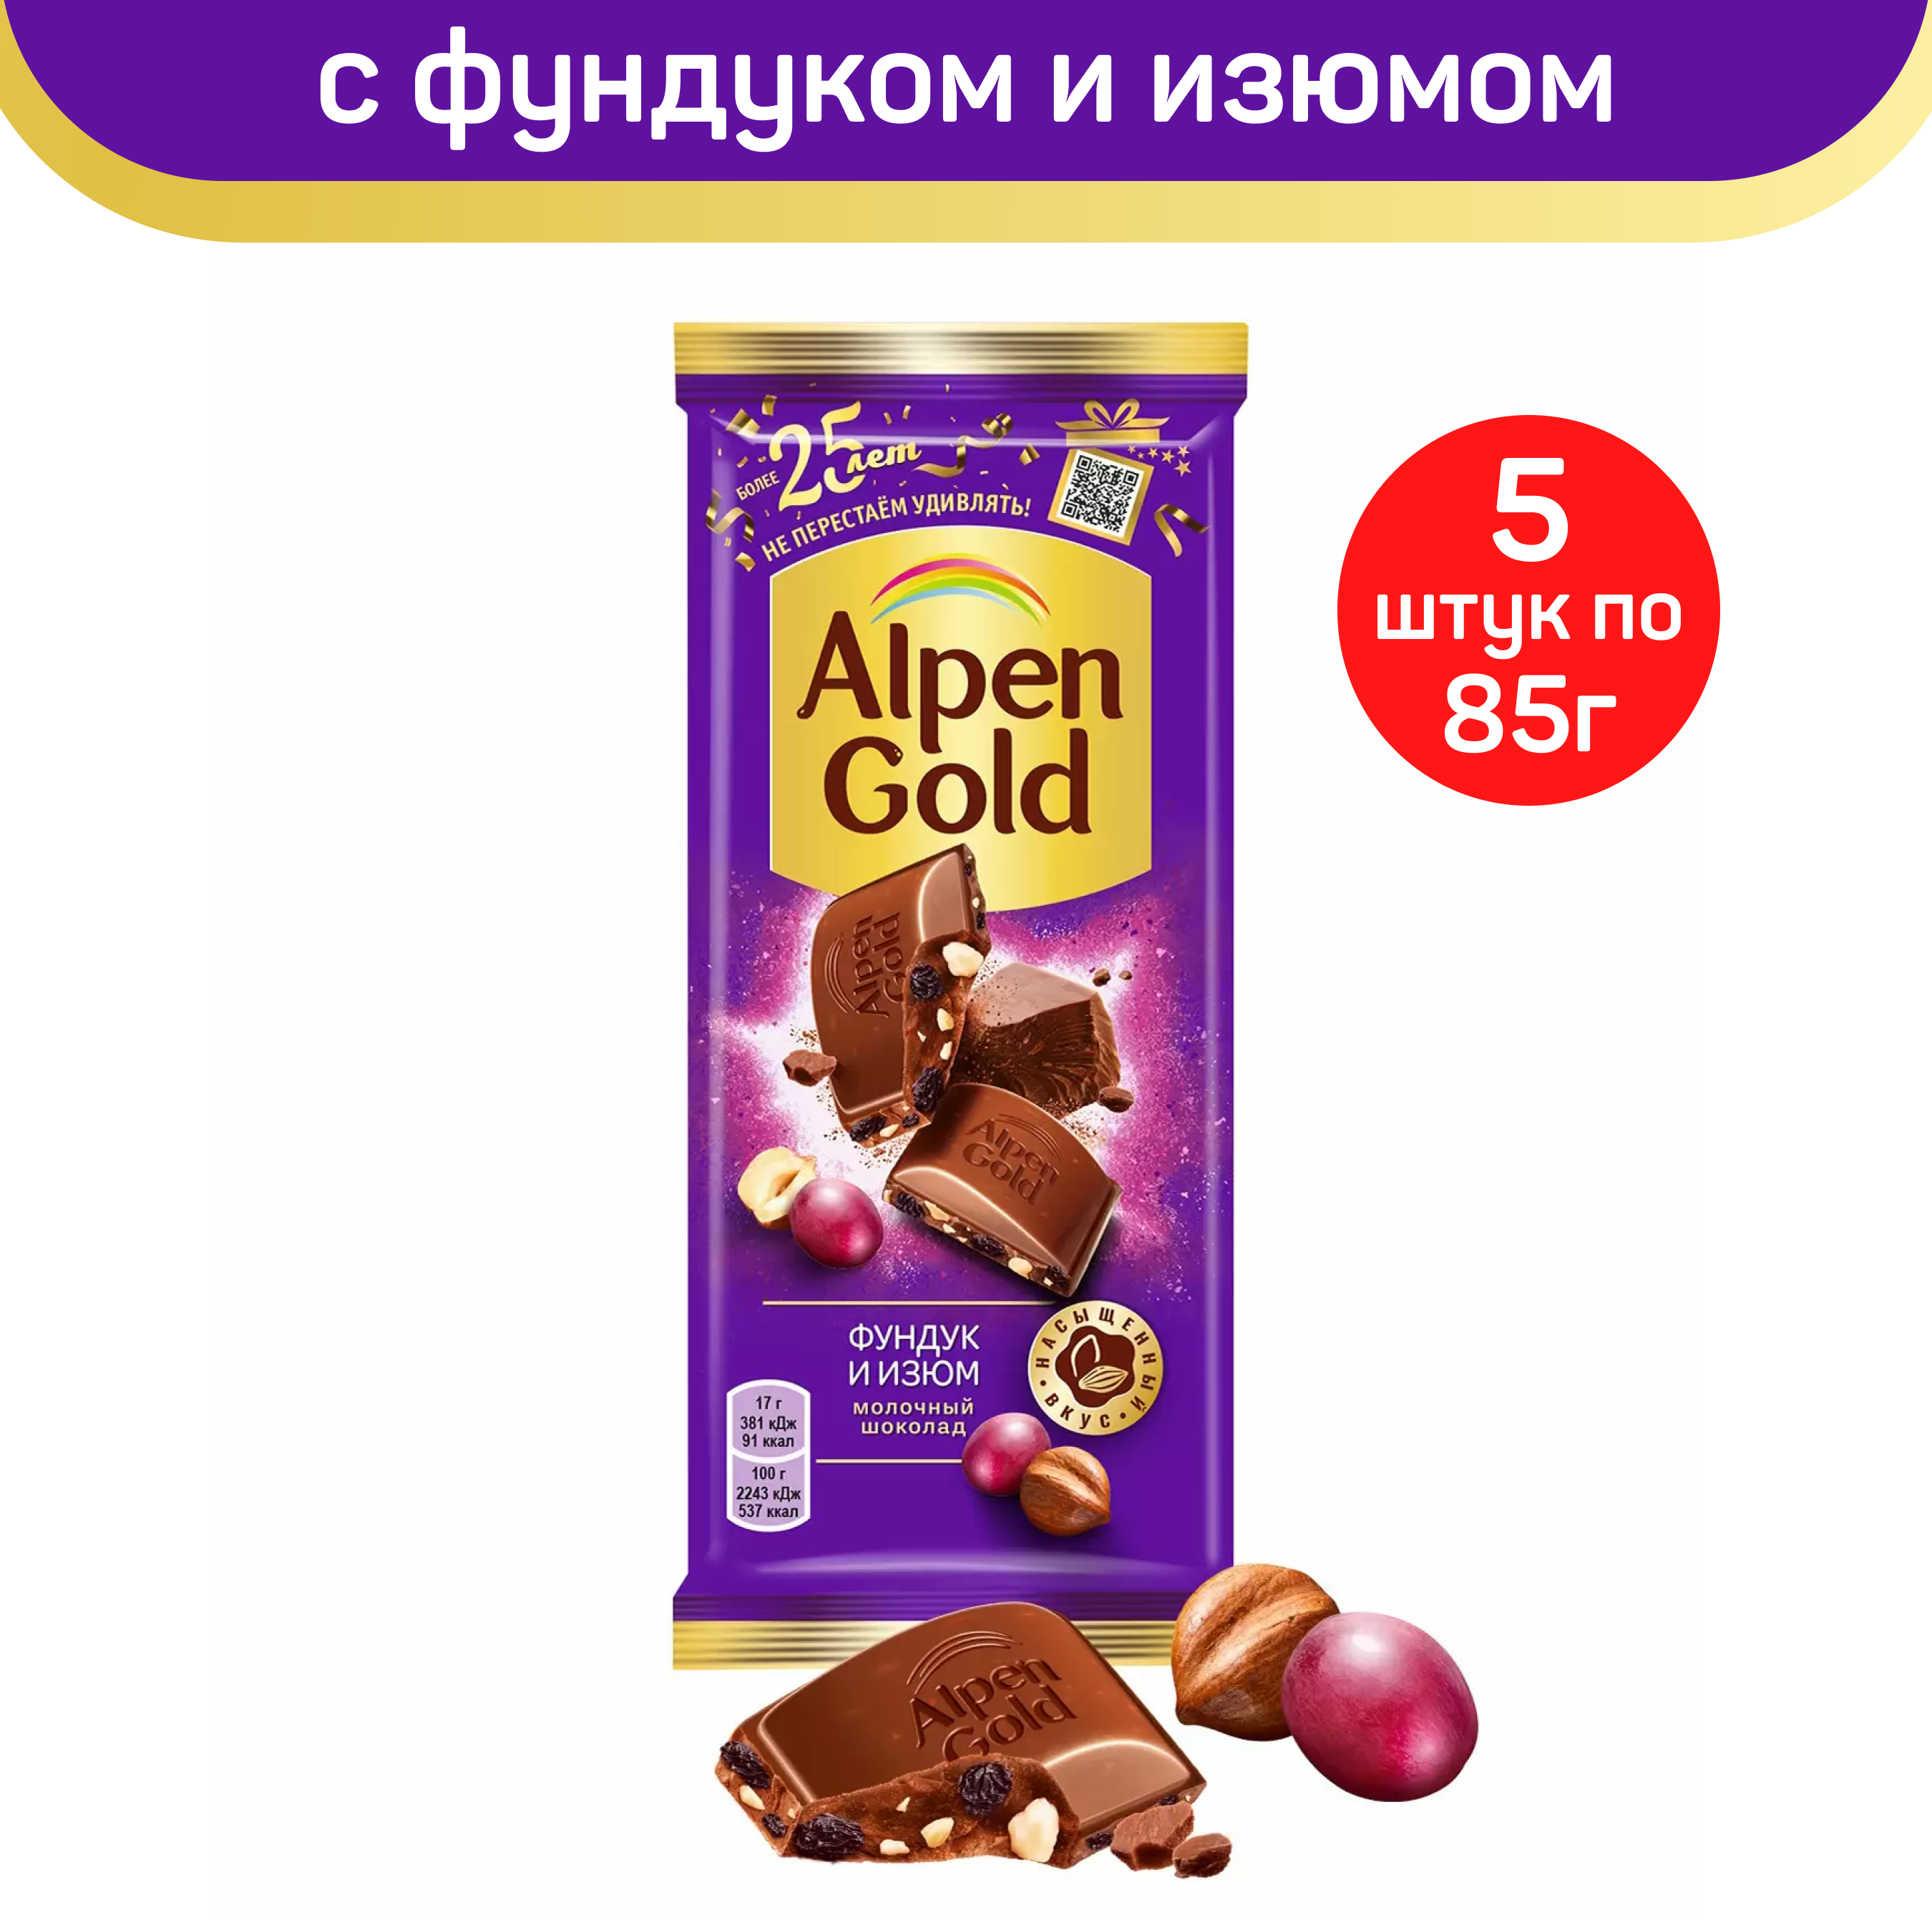 Шоколад молочный Alpen Gold с фундуком и изюмом, 5 шт по 85 г